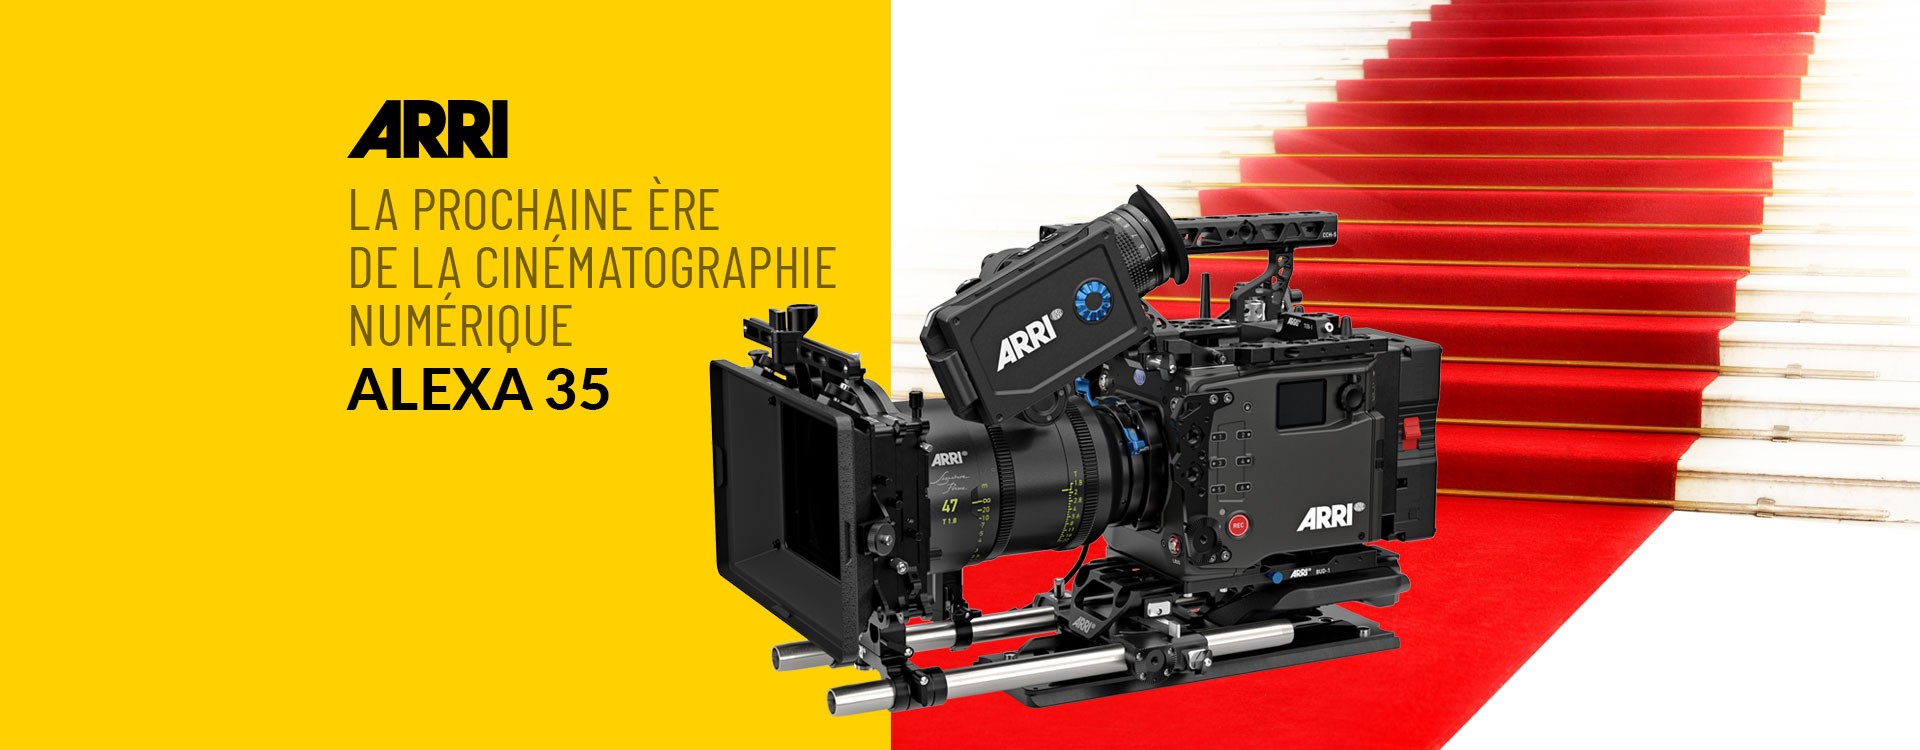 ARRI lance la prochaine ère de la cinématographie numérique avec la nouvelle caméra ALEXA 35